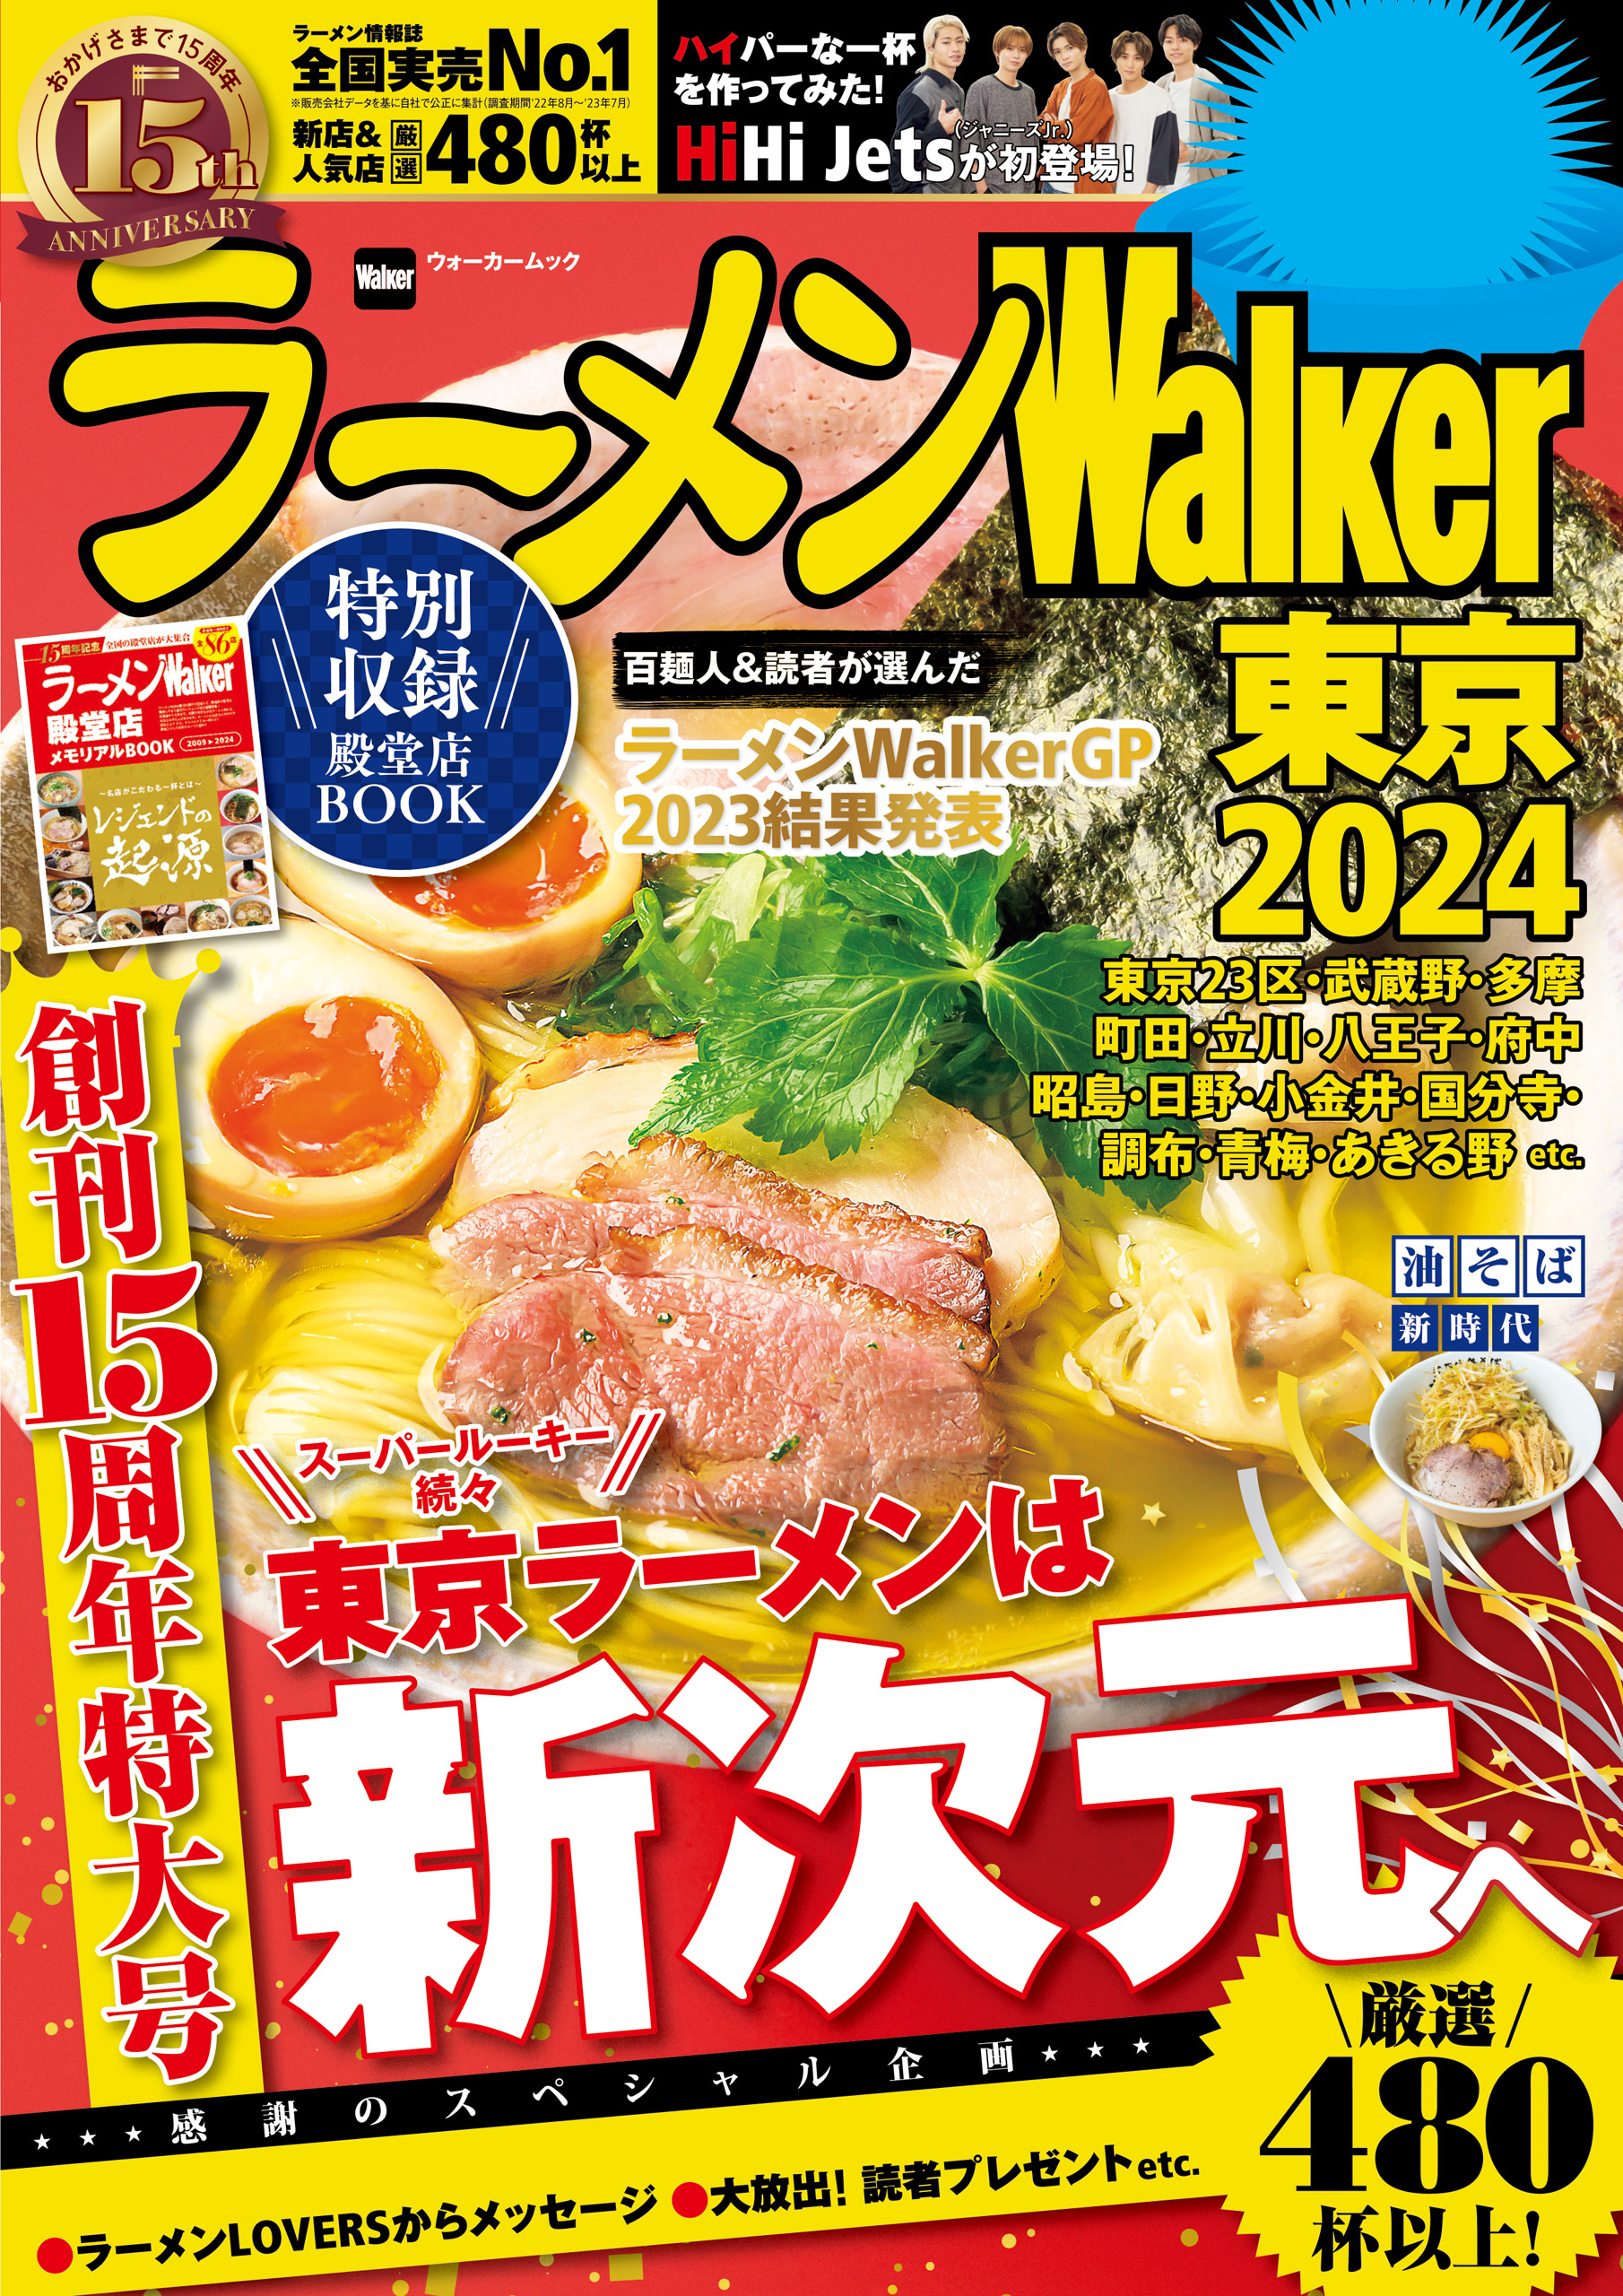 ラーメンWalker東京2024 - ラーメンWalker編集部 - ビジネス・実用 ...